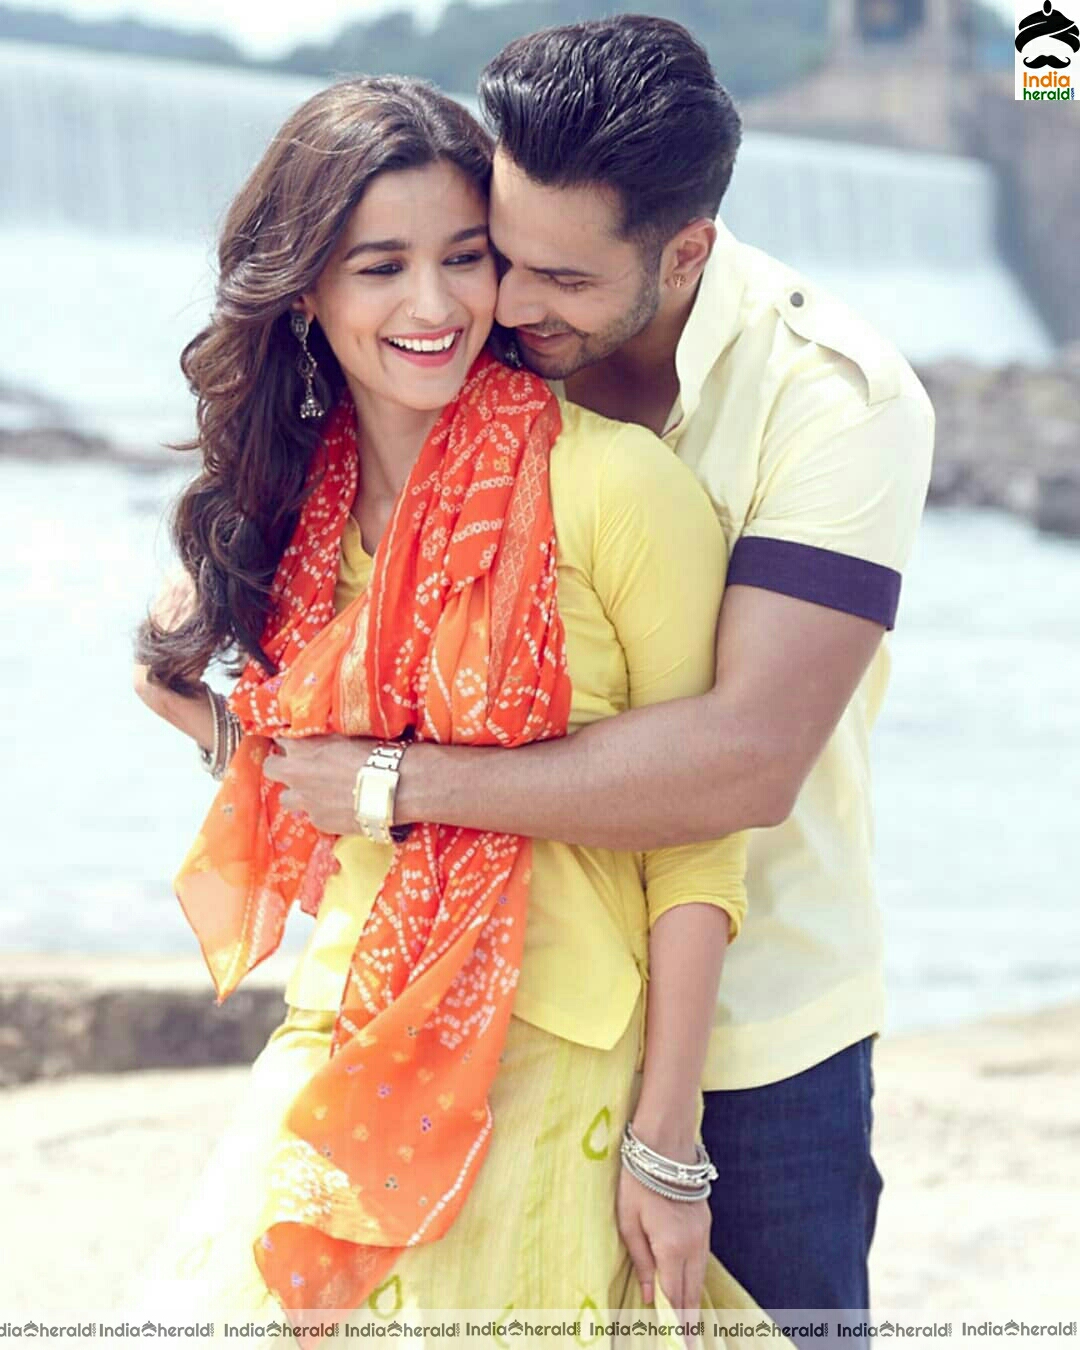 Aliabhatt And Varun Dhawan Make A Cute Lovely Couple